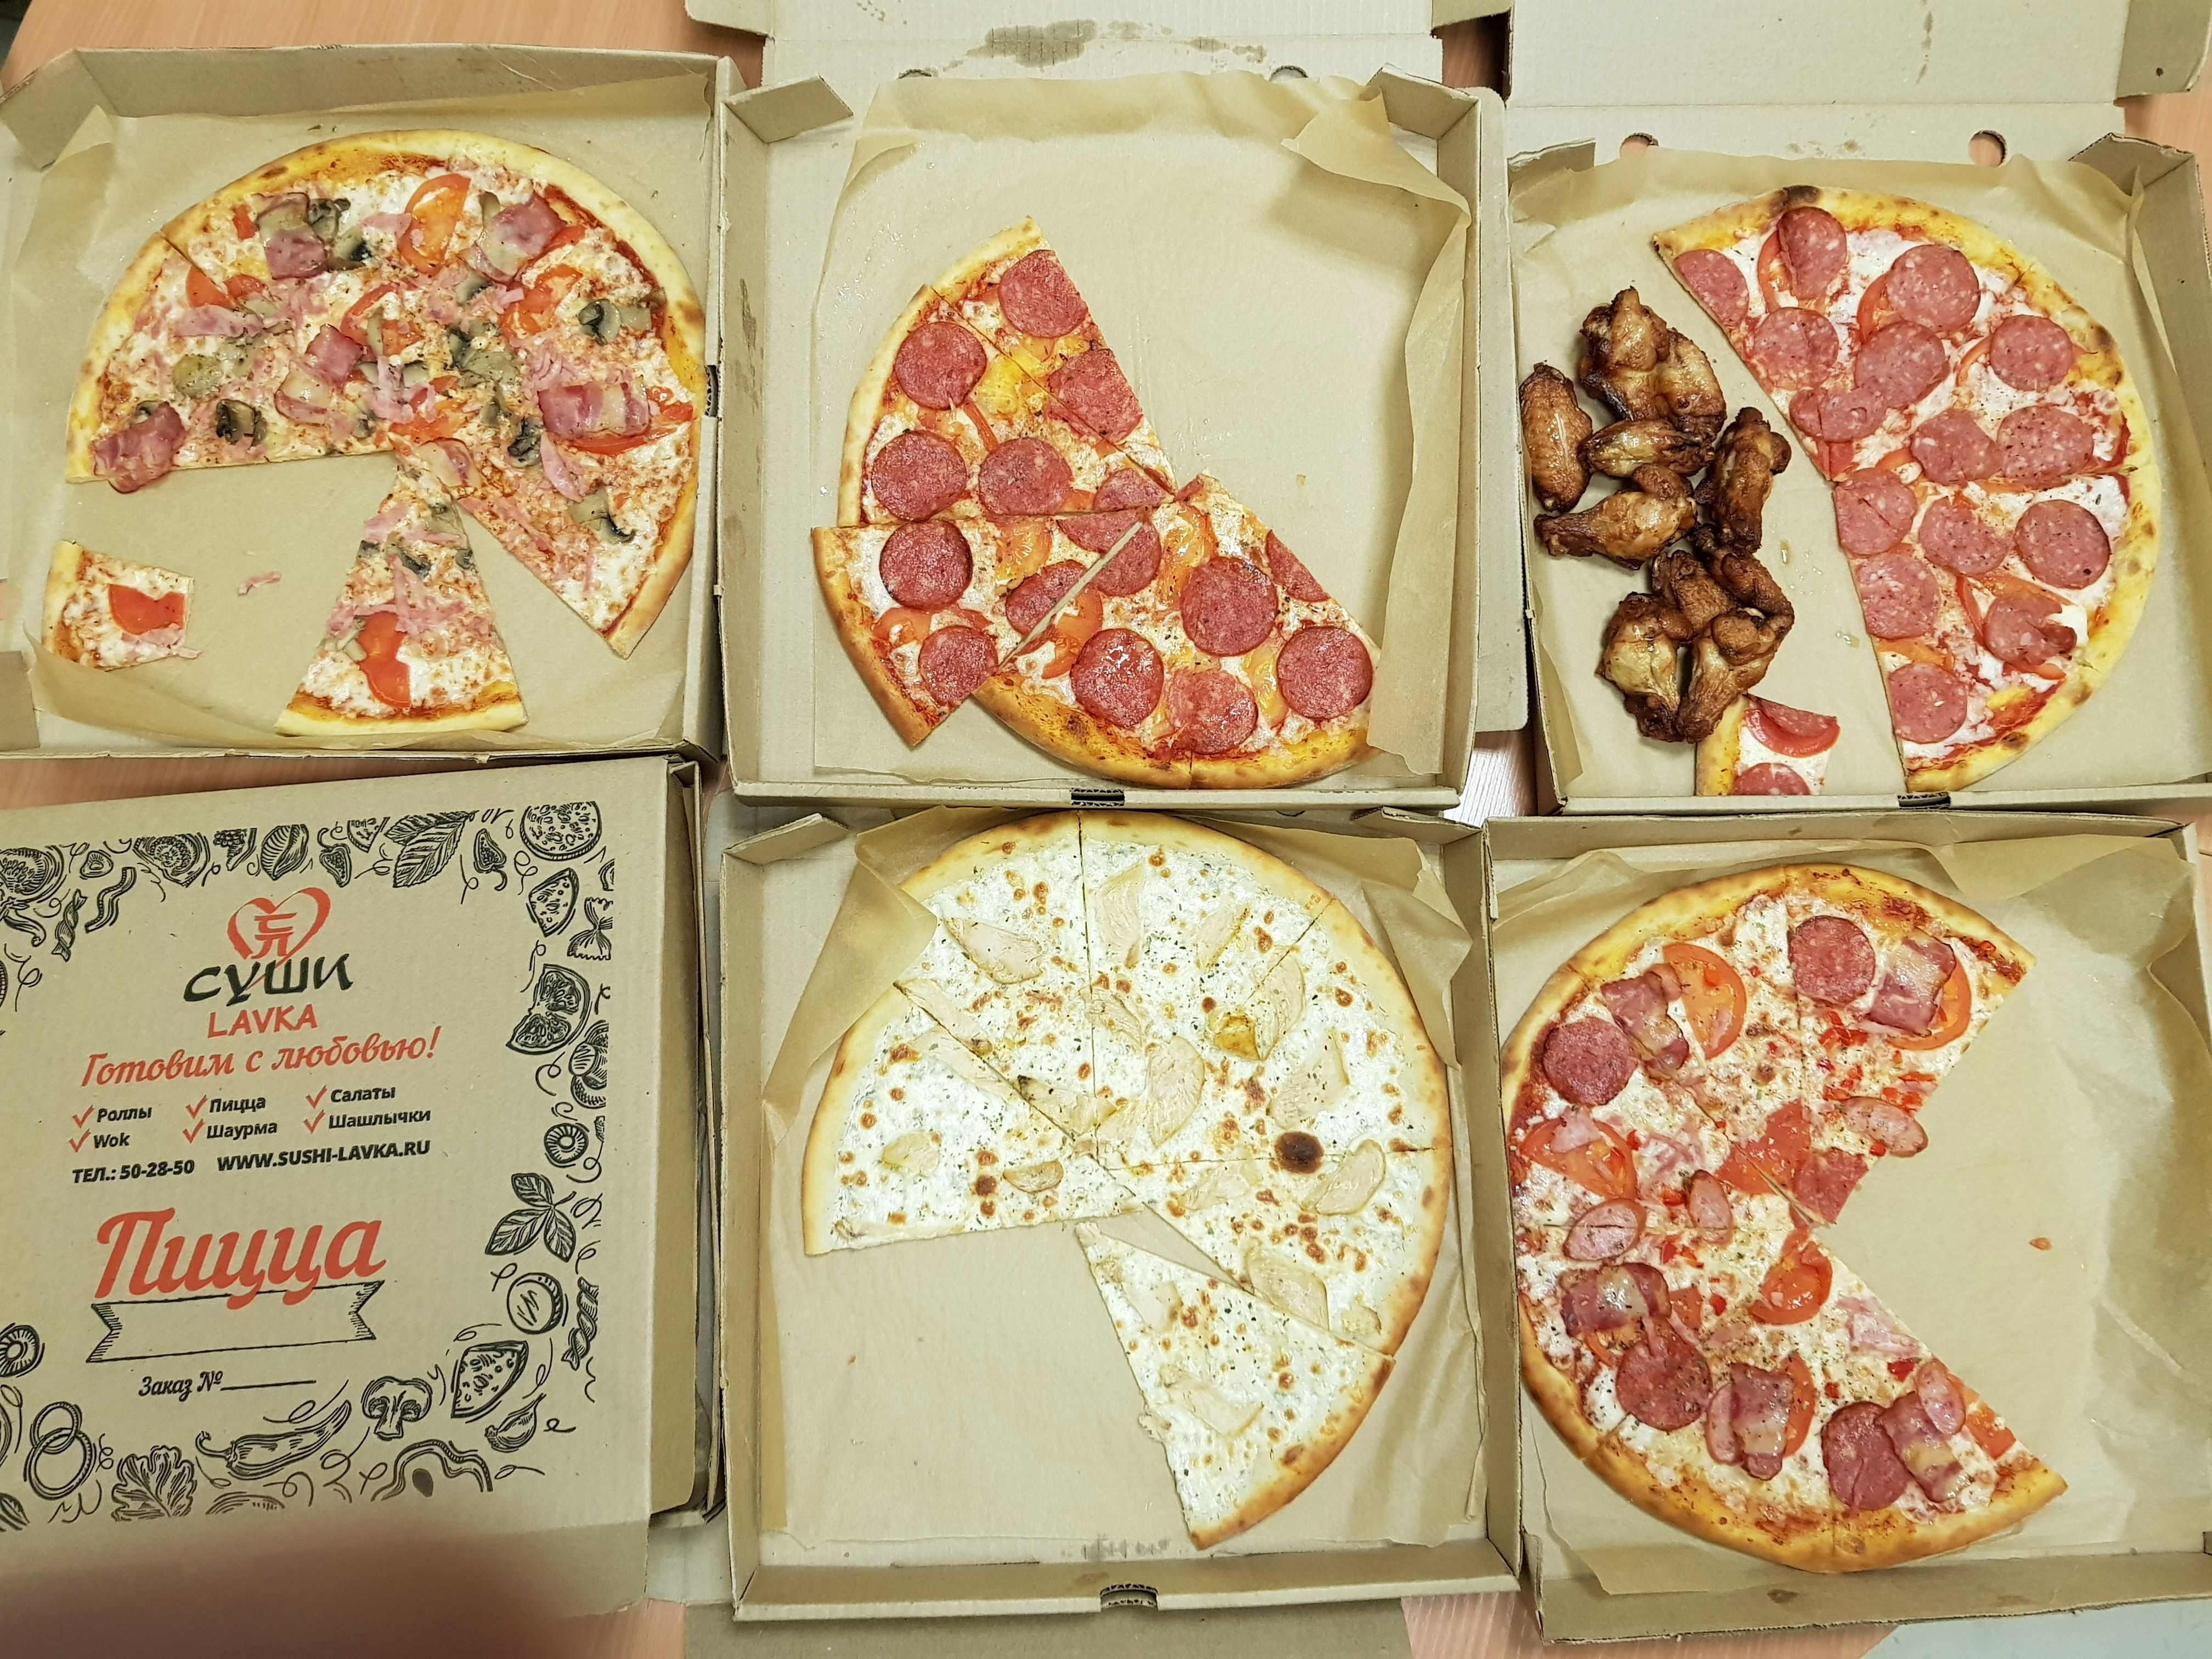 Пицца суши вок московский отзывы (120) фото